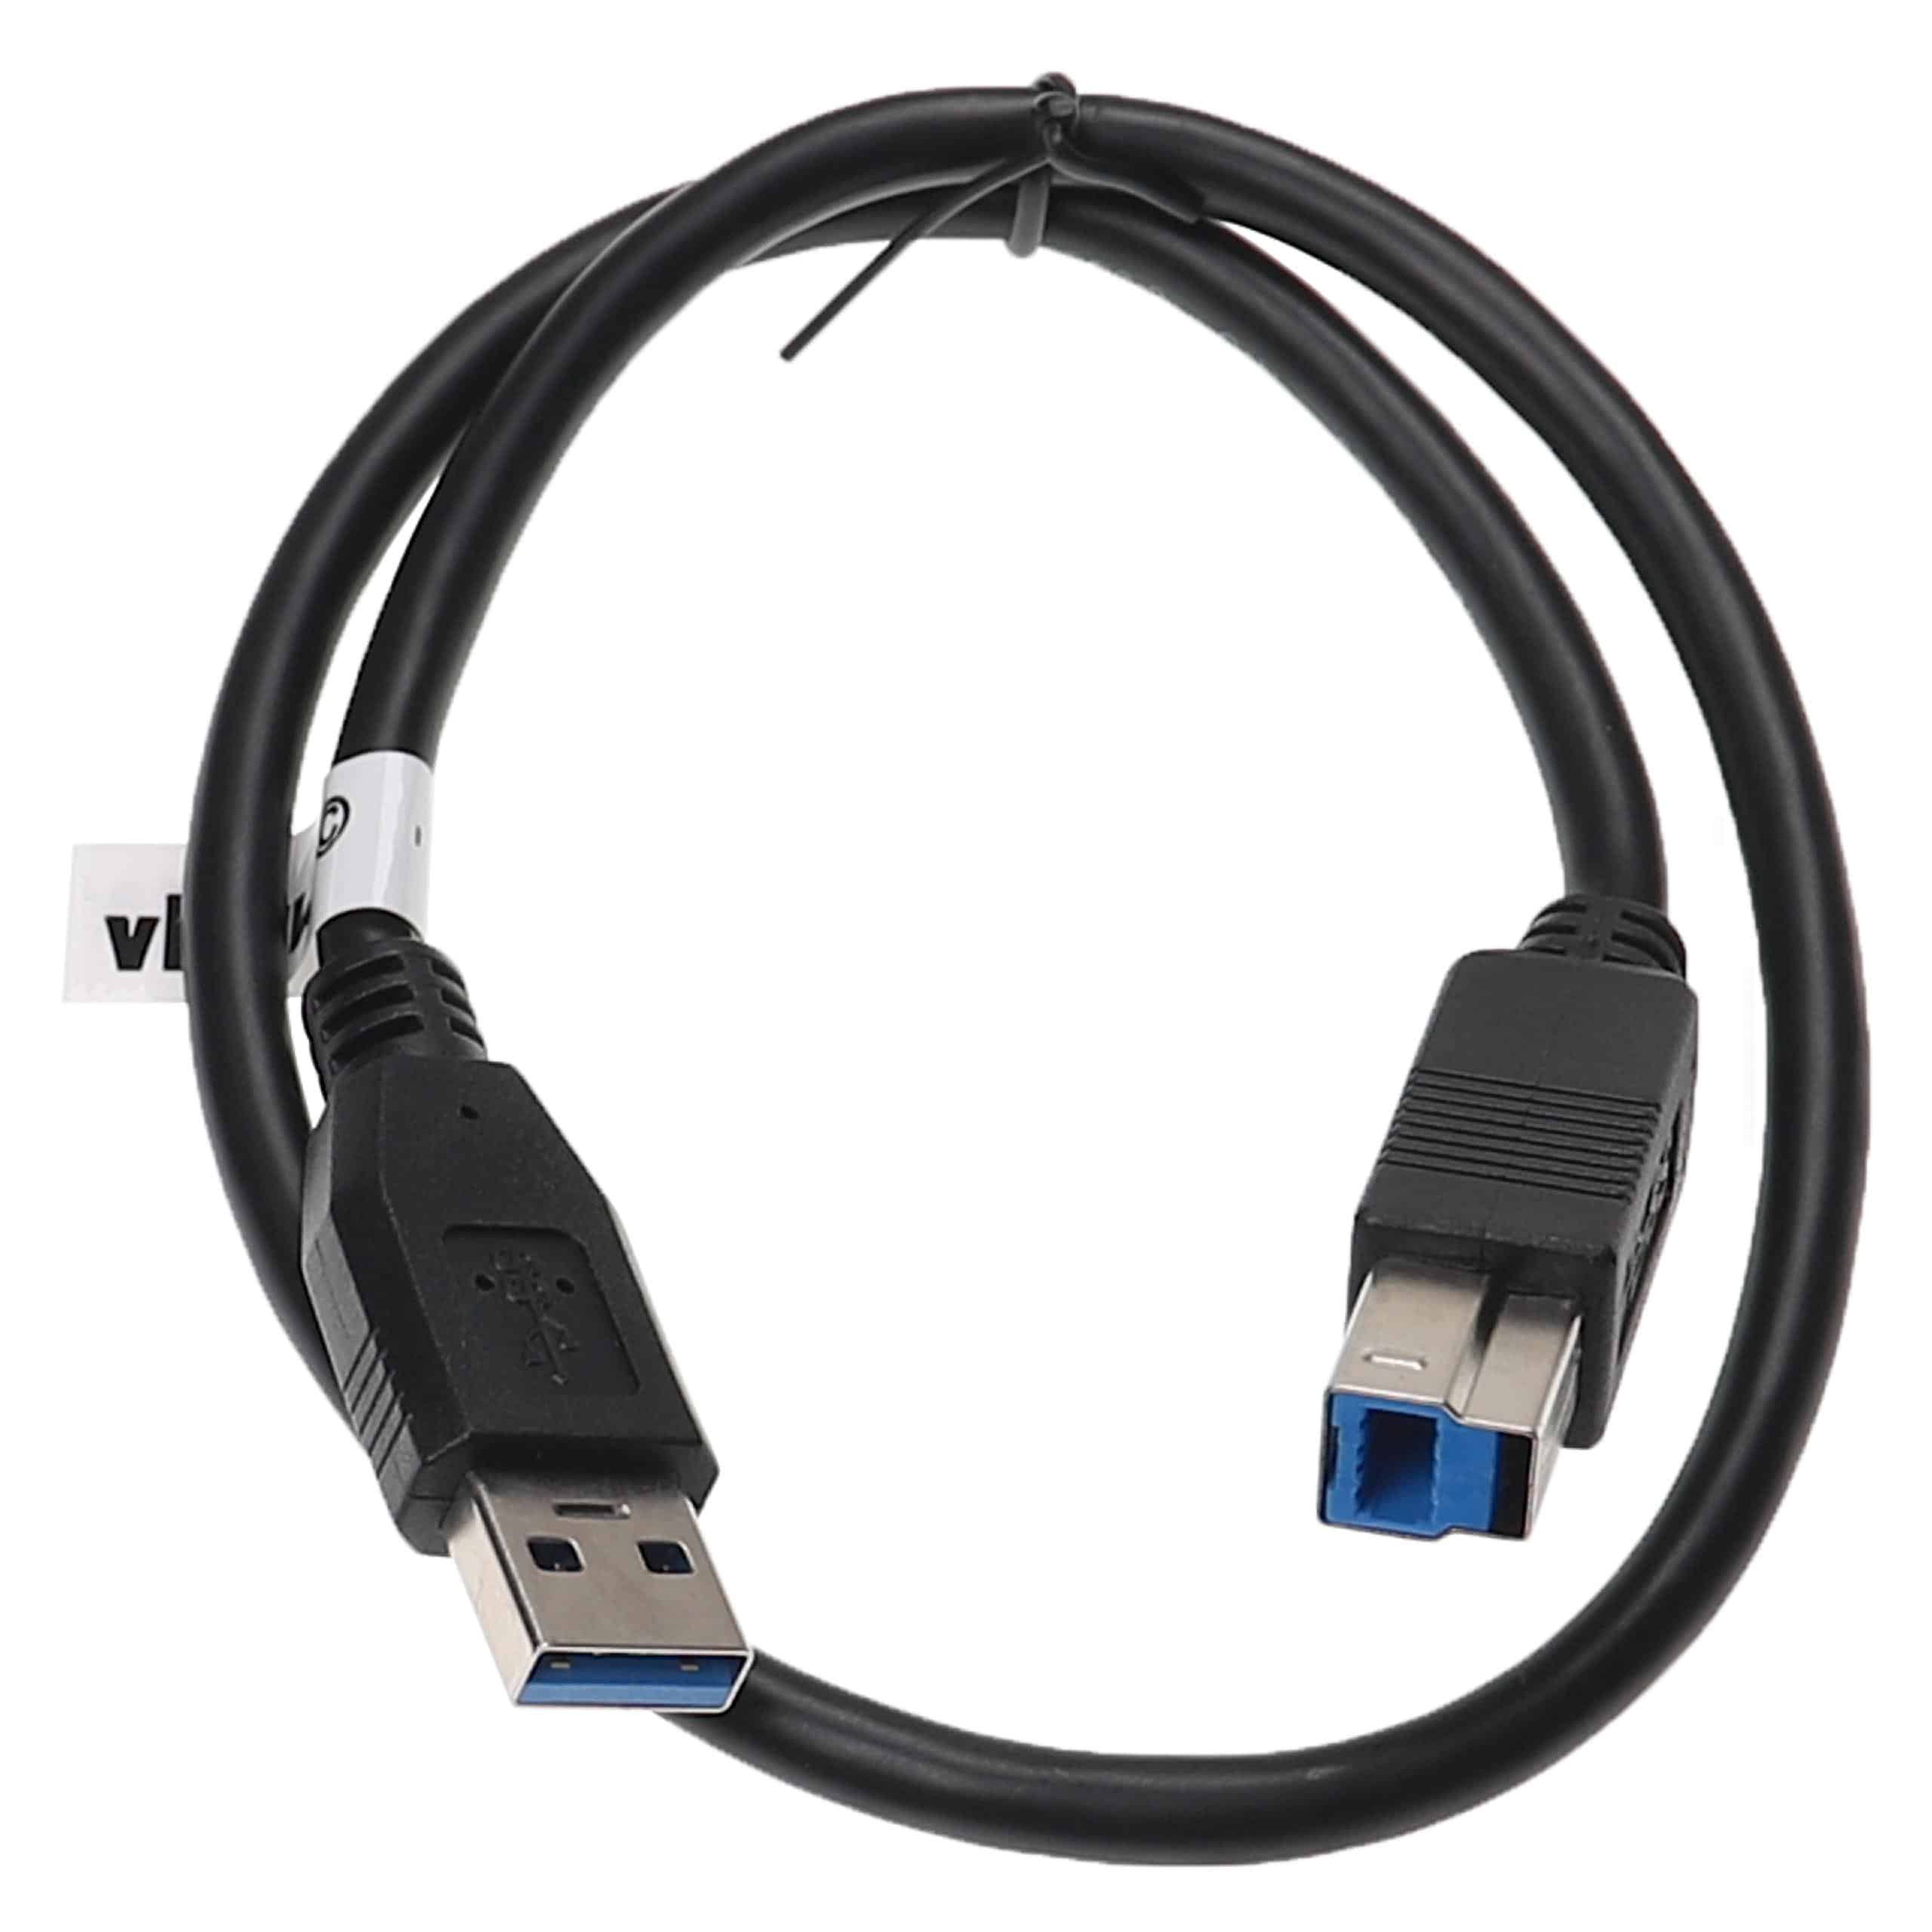 Cable USB 3.0 tipo A a tipo B - Cable de datos USB 50 cm negro